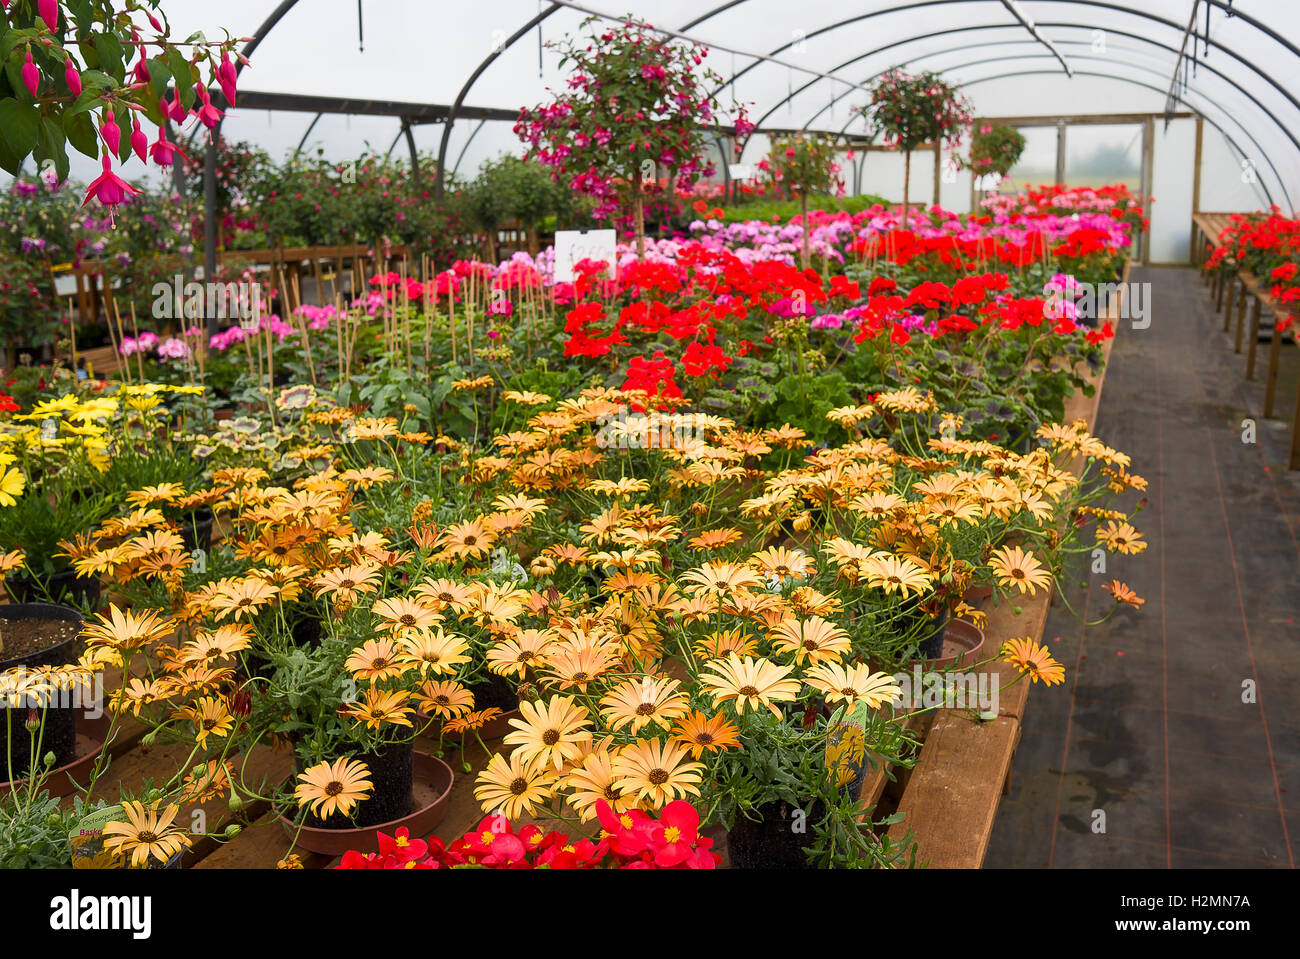 Beetpflanzen, einschließlich Gazanias auf Bänken in einer Gärtnerei Einzelhandel zum Verkauf in UK Stockfoto